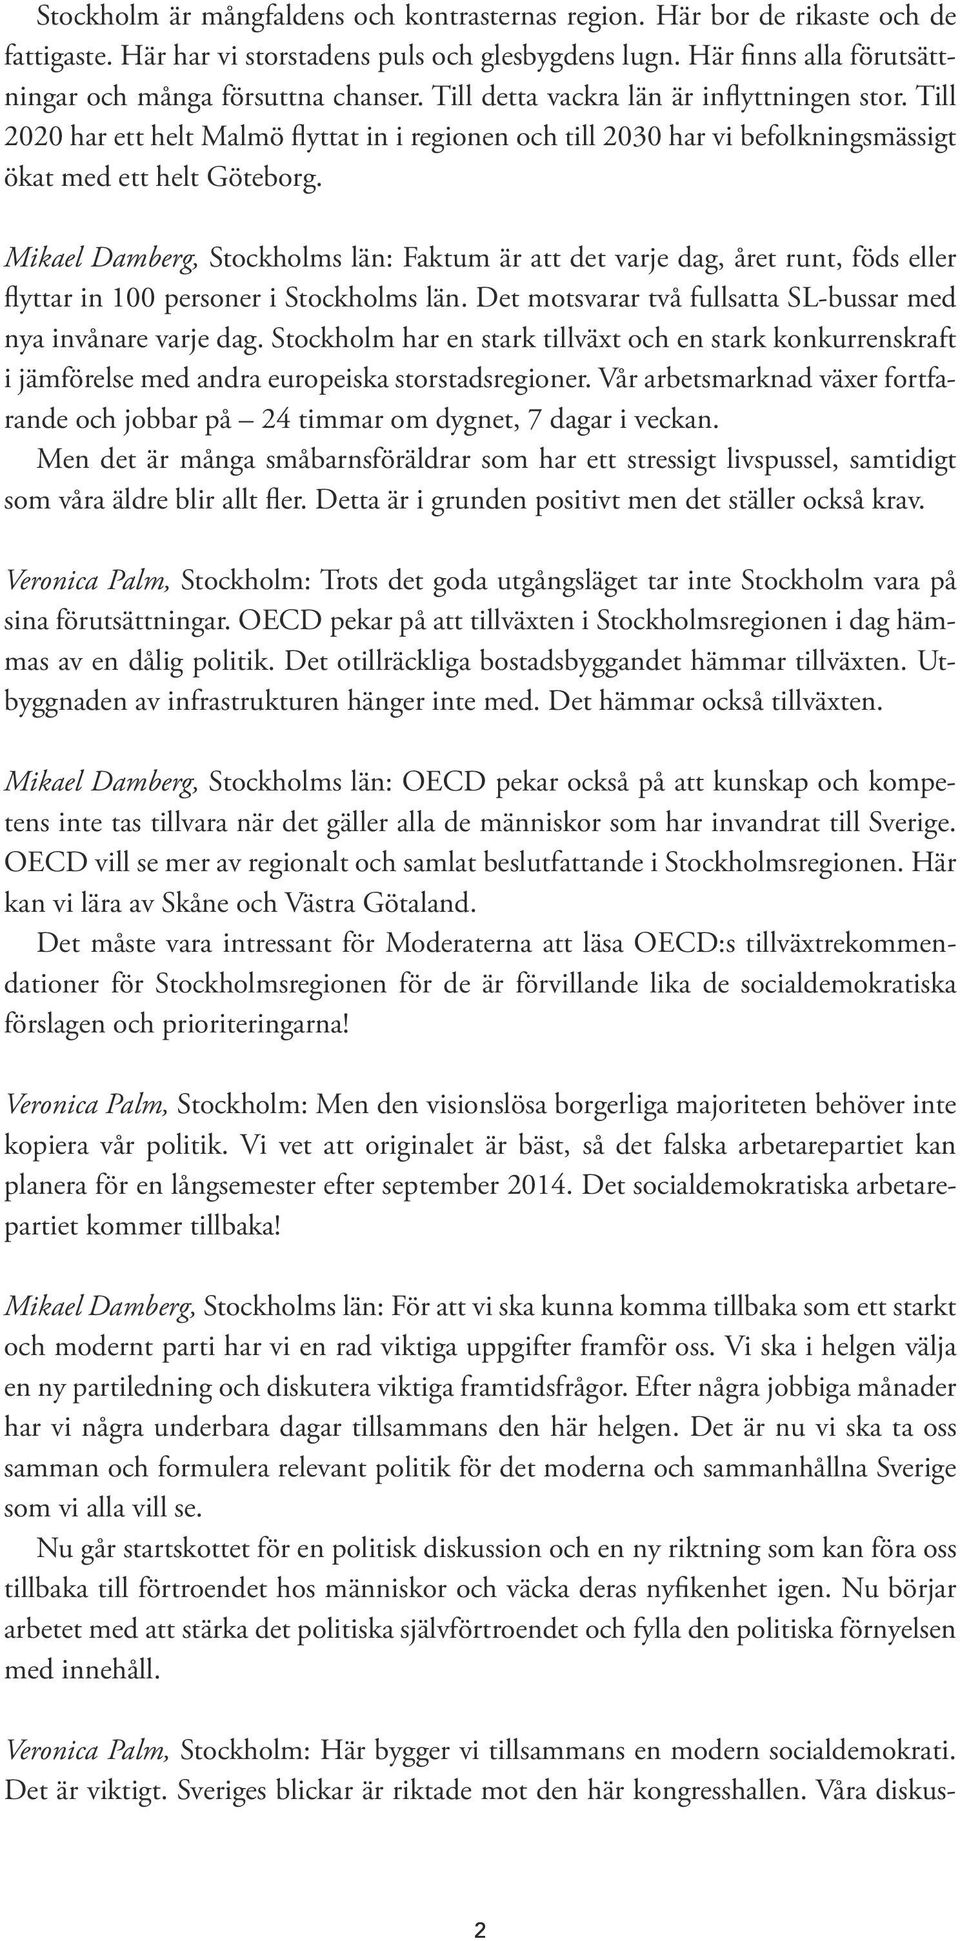 Mikael Damberg, Stockholms län: Faktum är att det varje dag, året runt, föds eller flyttar in 100 personer i Stockholms län. Det motsvarar två fullsatta SL-bussar med nya invånare varje dag.